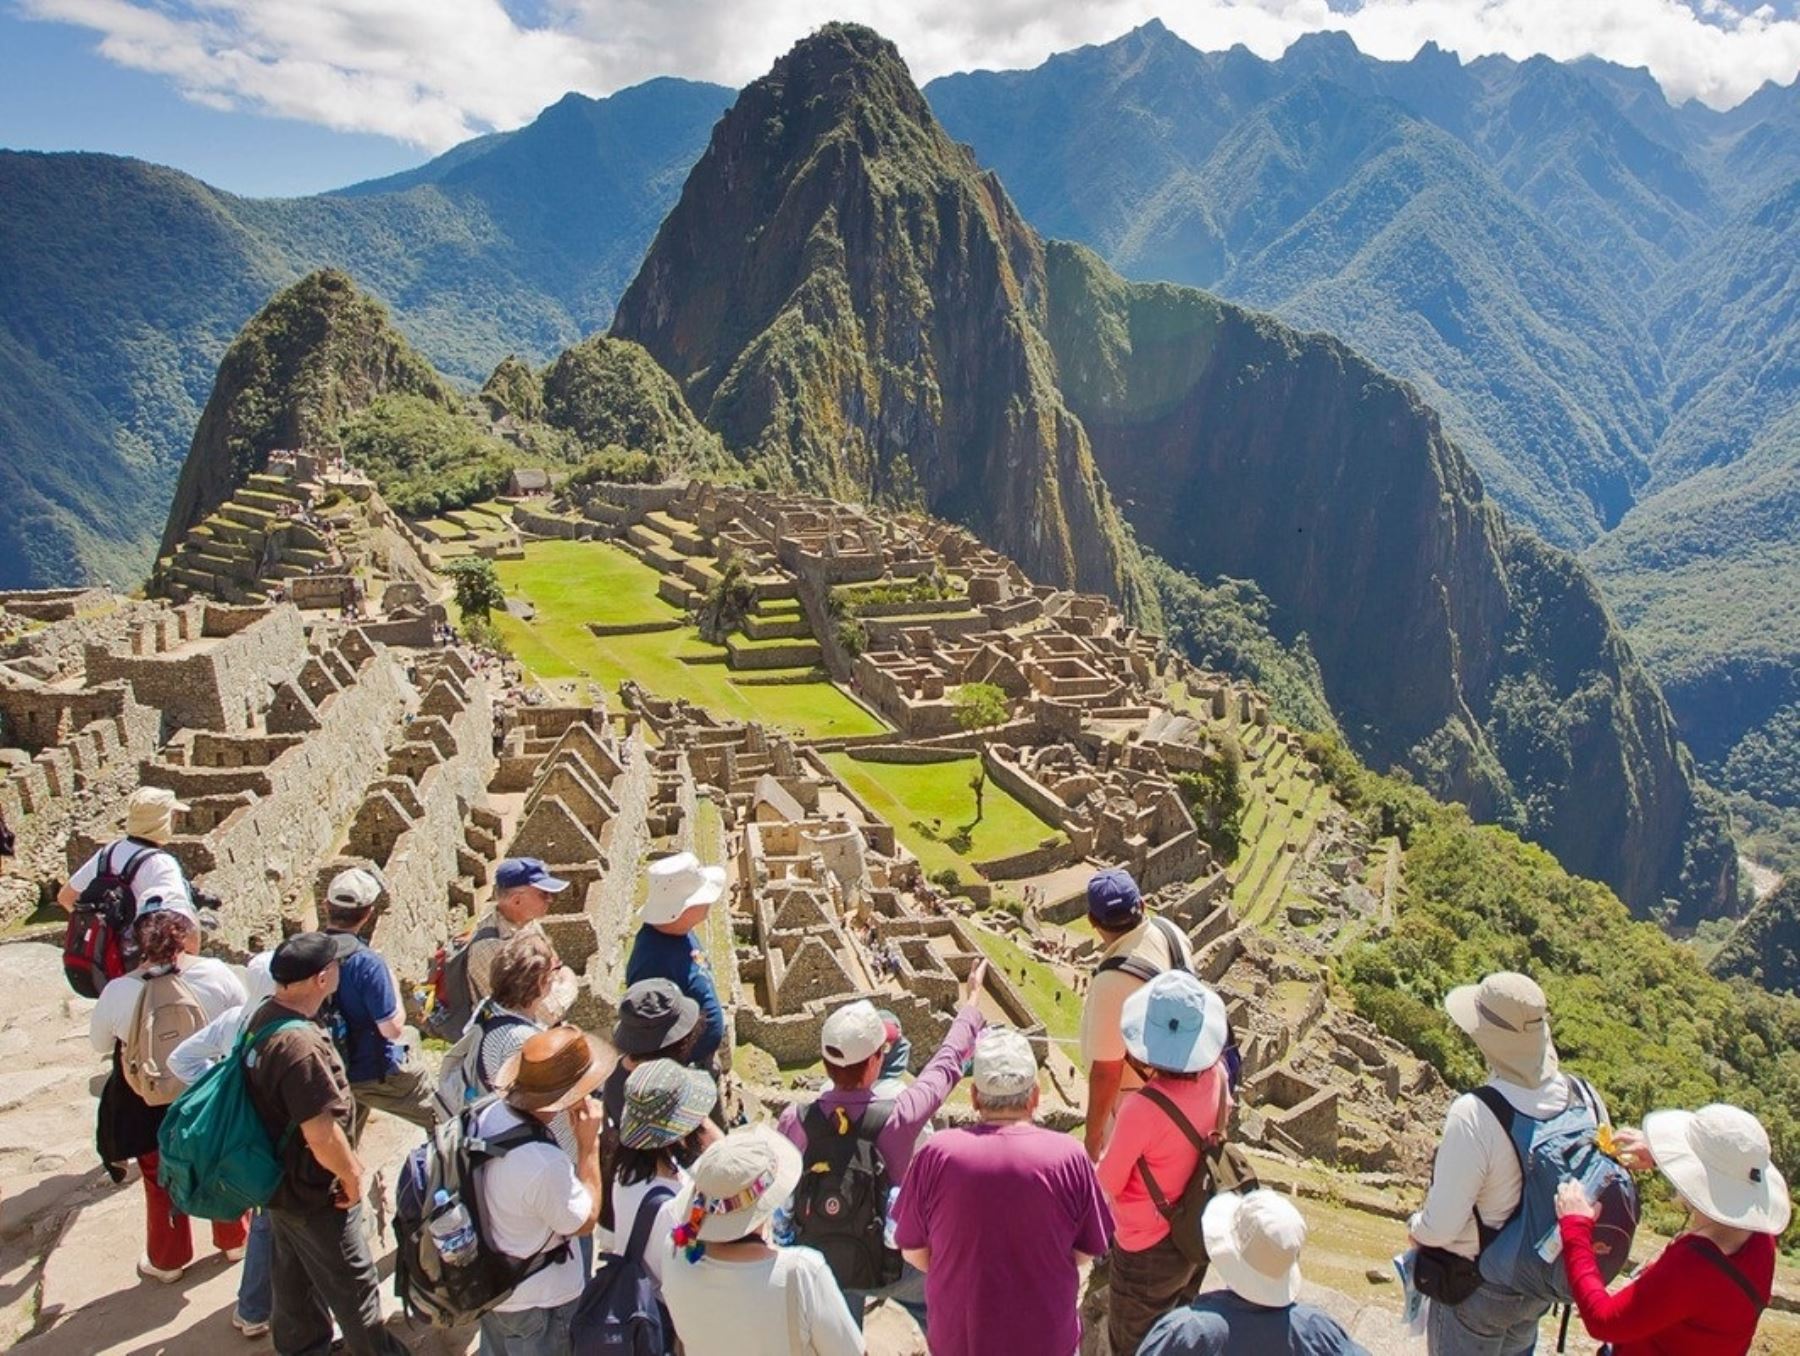 Hasta el 31 de diciembre la ciudadela inca de Machu Picchu, ubicada en Cusco, recibirá 4,044 visitantes al día, de acuerdo a lo aprobado por la Unidad de Gestión de Machu Picchu. ANDINA/Difusión